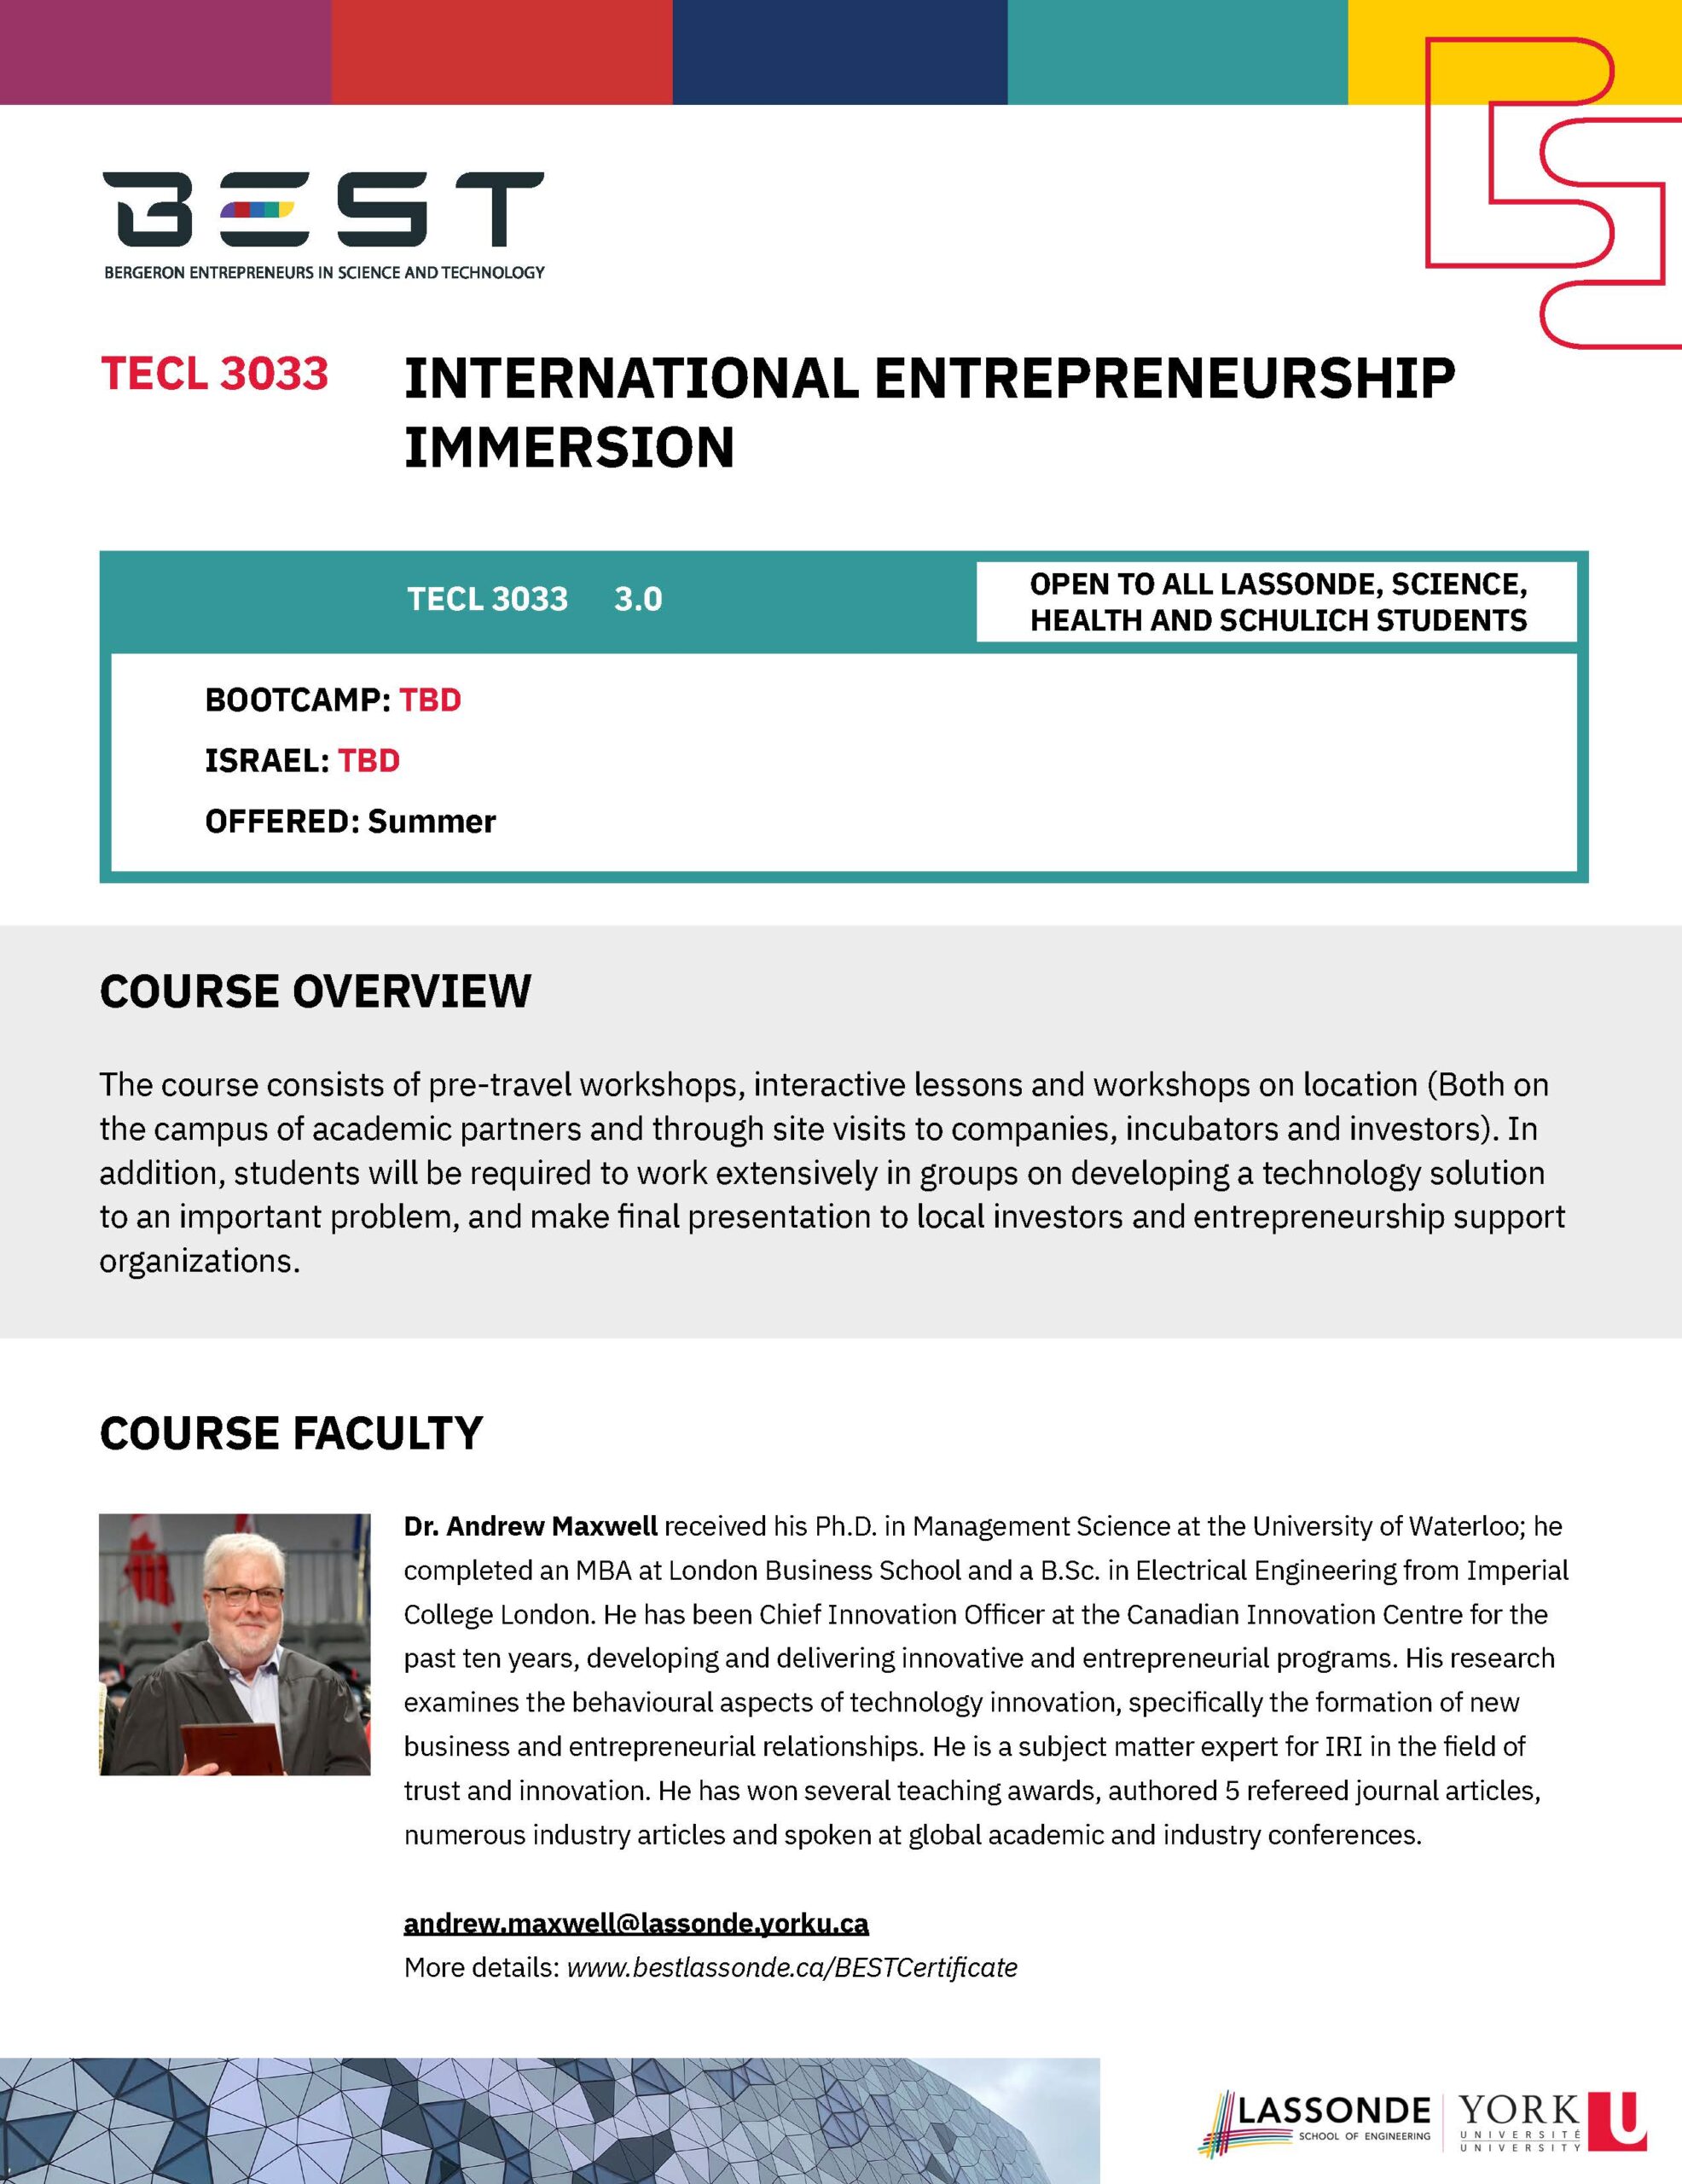 TECL 3033
International Entrepreneurship Immersion (poster)